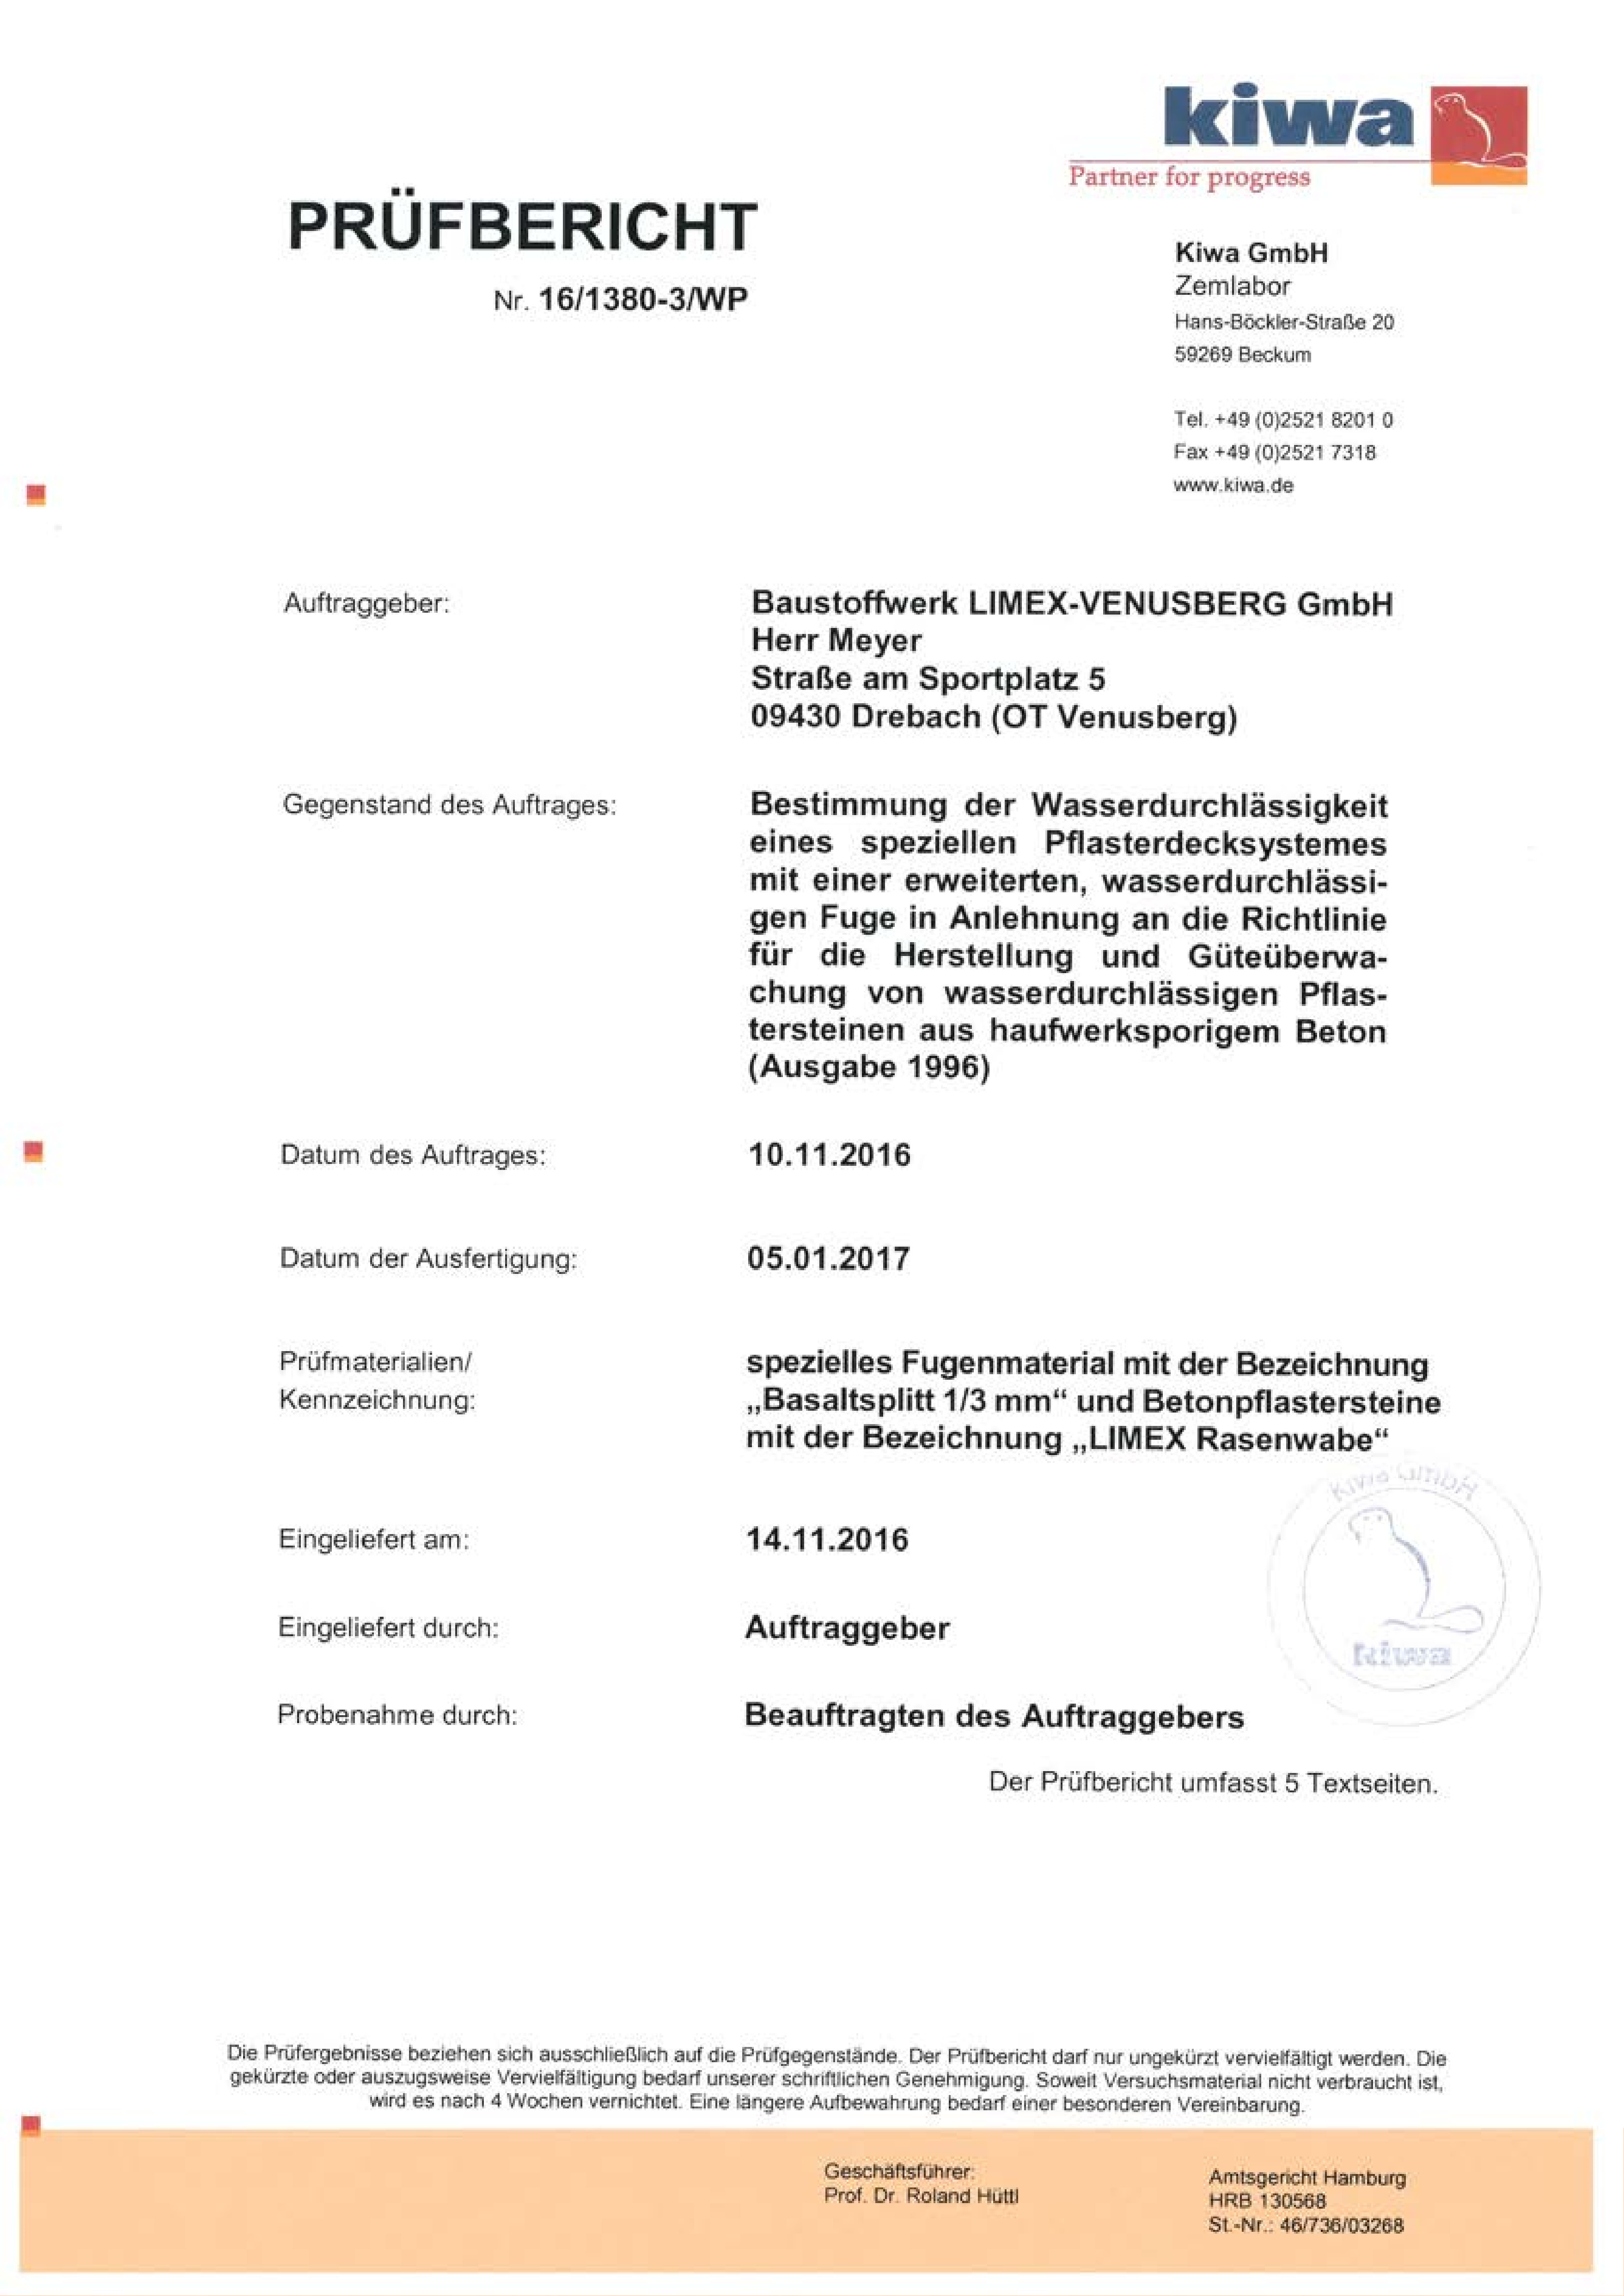 LIMEX Infocenter Pruefzeugnis 16 1380 3 WP LIMEX Rasenkammerstein pdf